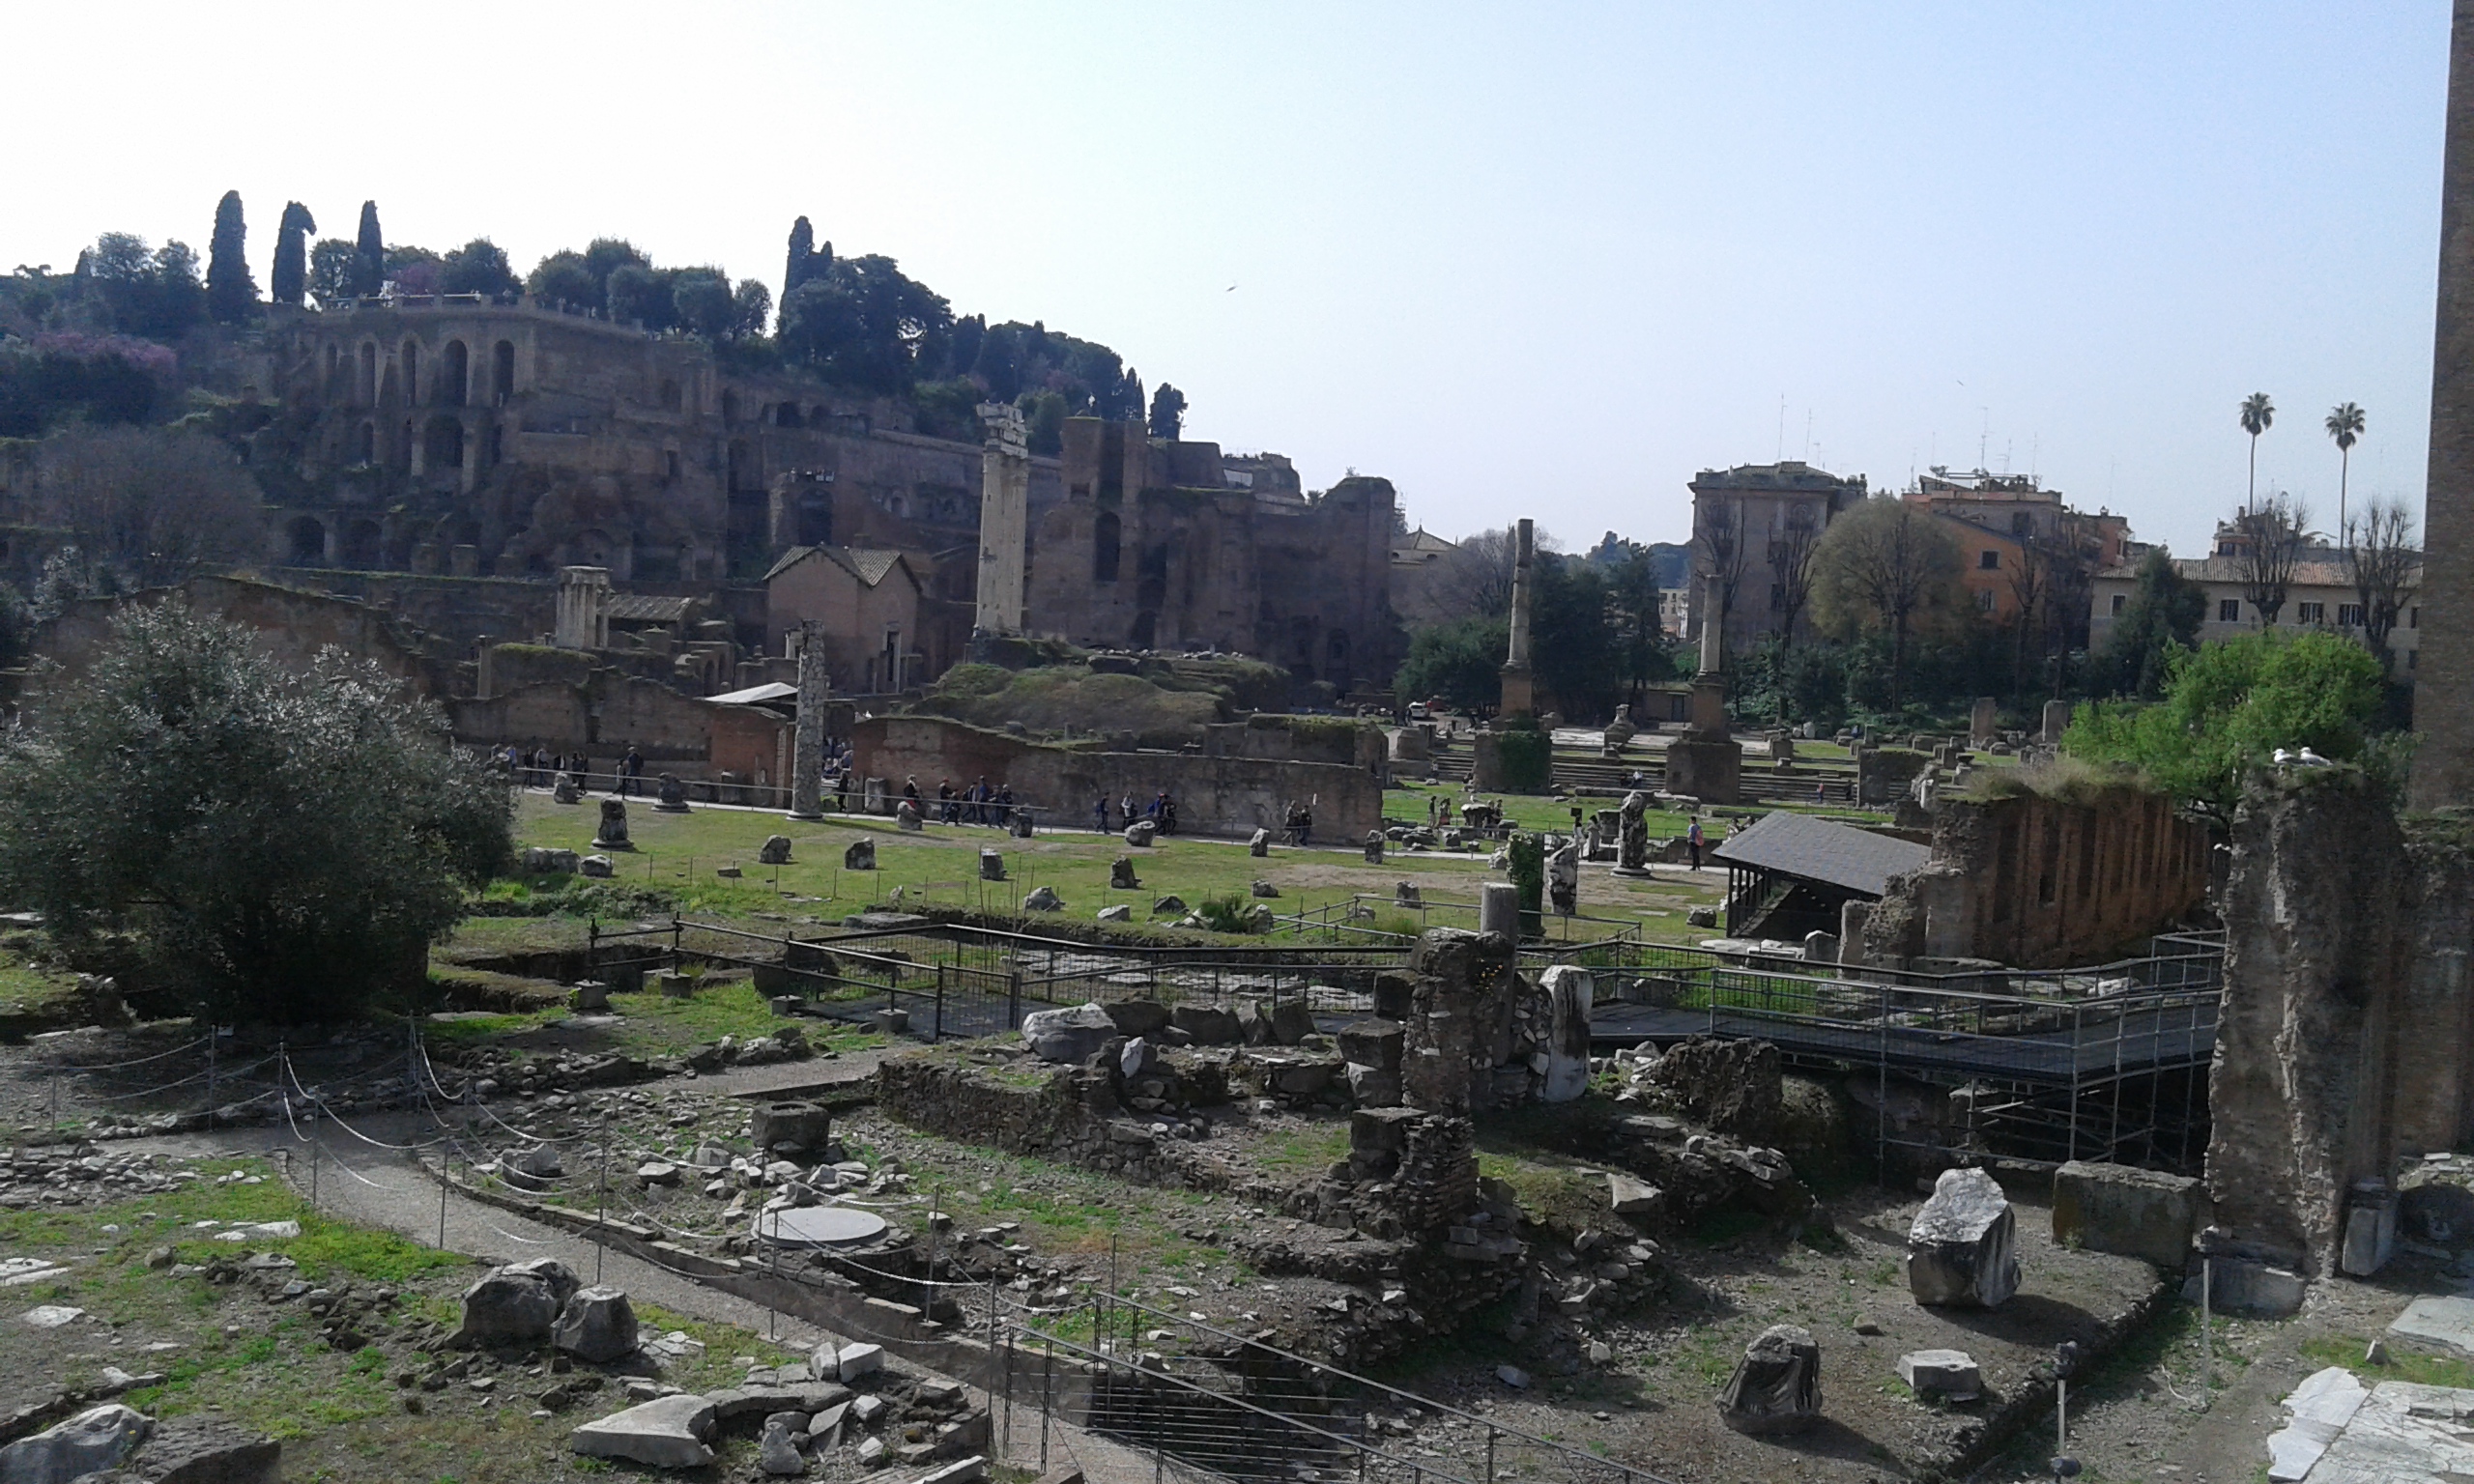 Le ricchezze archeologiche di Roma da oggi accessibili a tutti